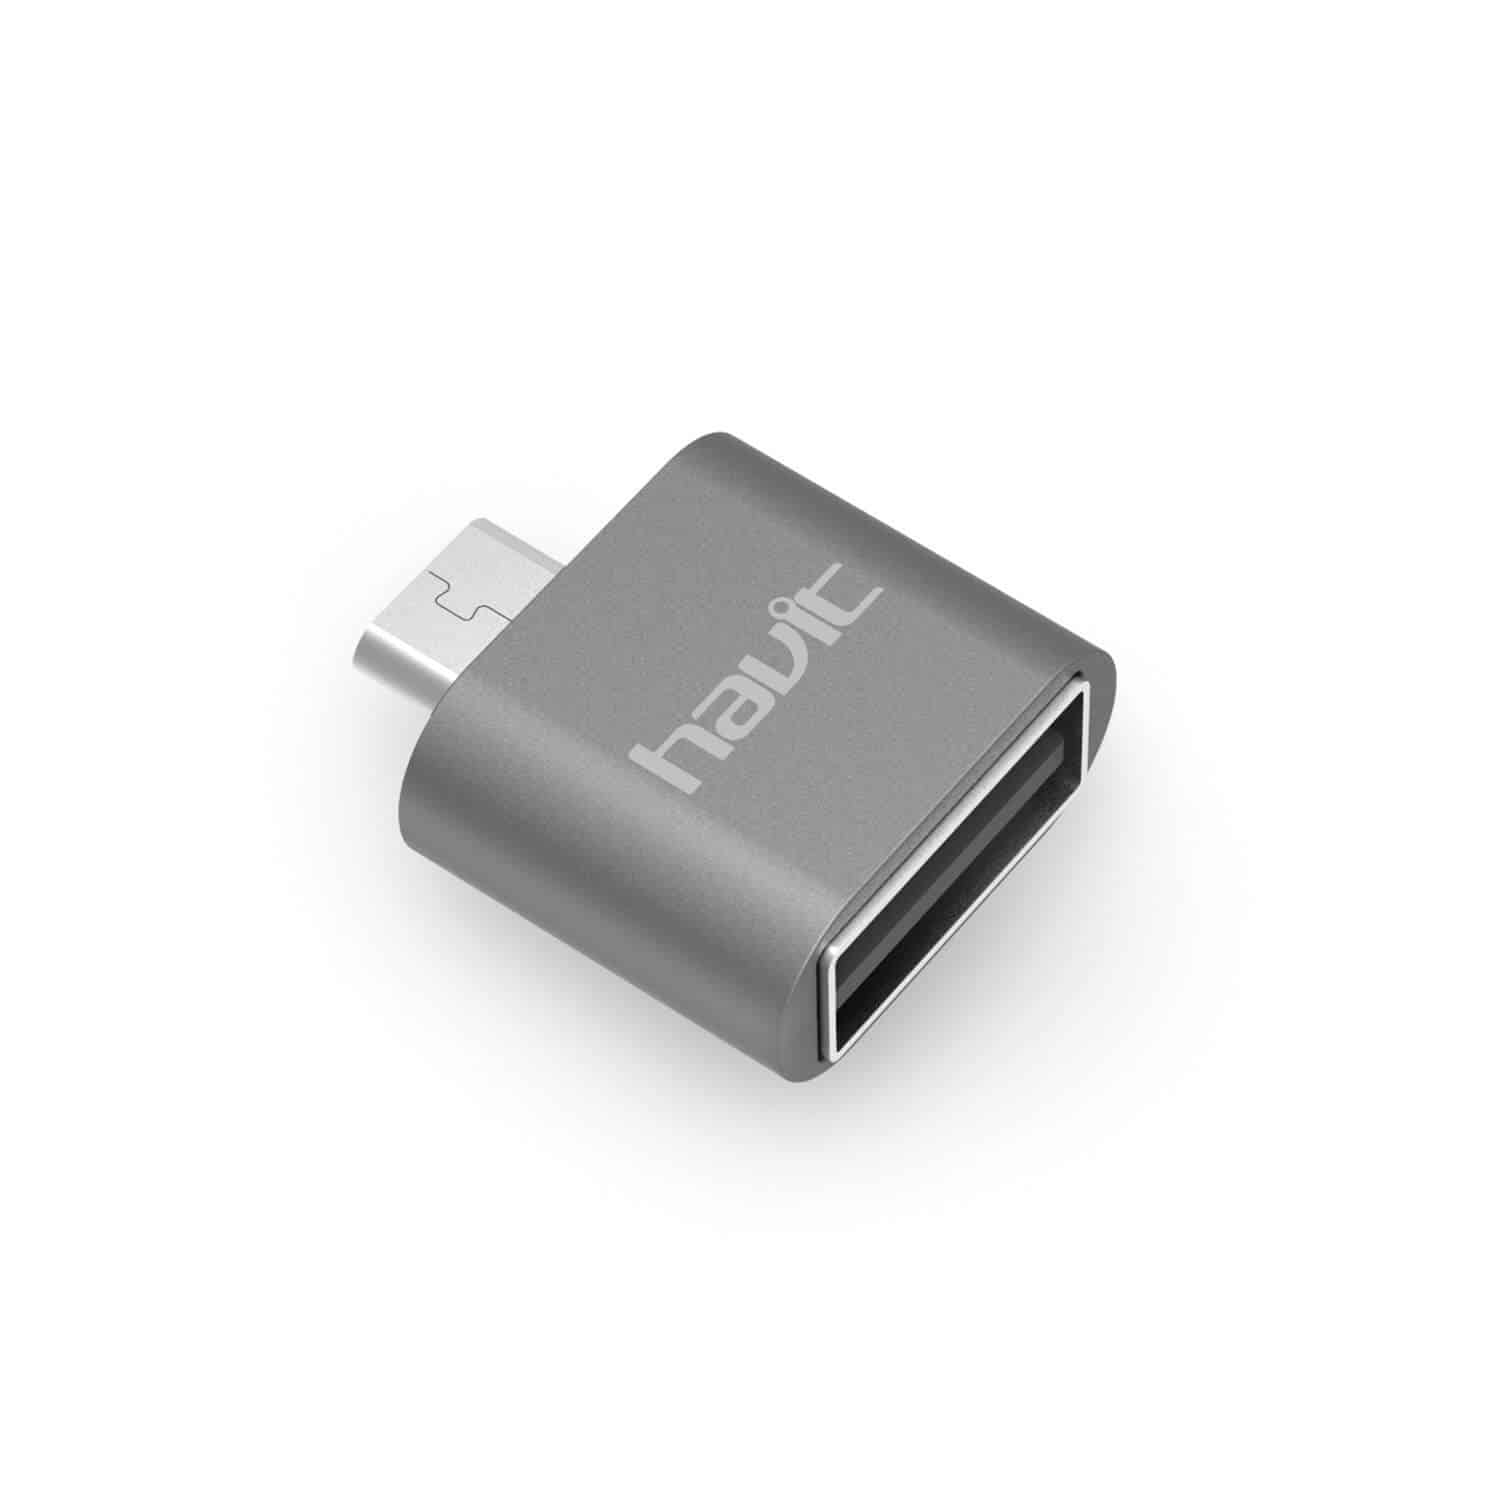 HAVIT T1 Micro-USB OTG Adapter